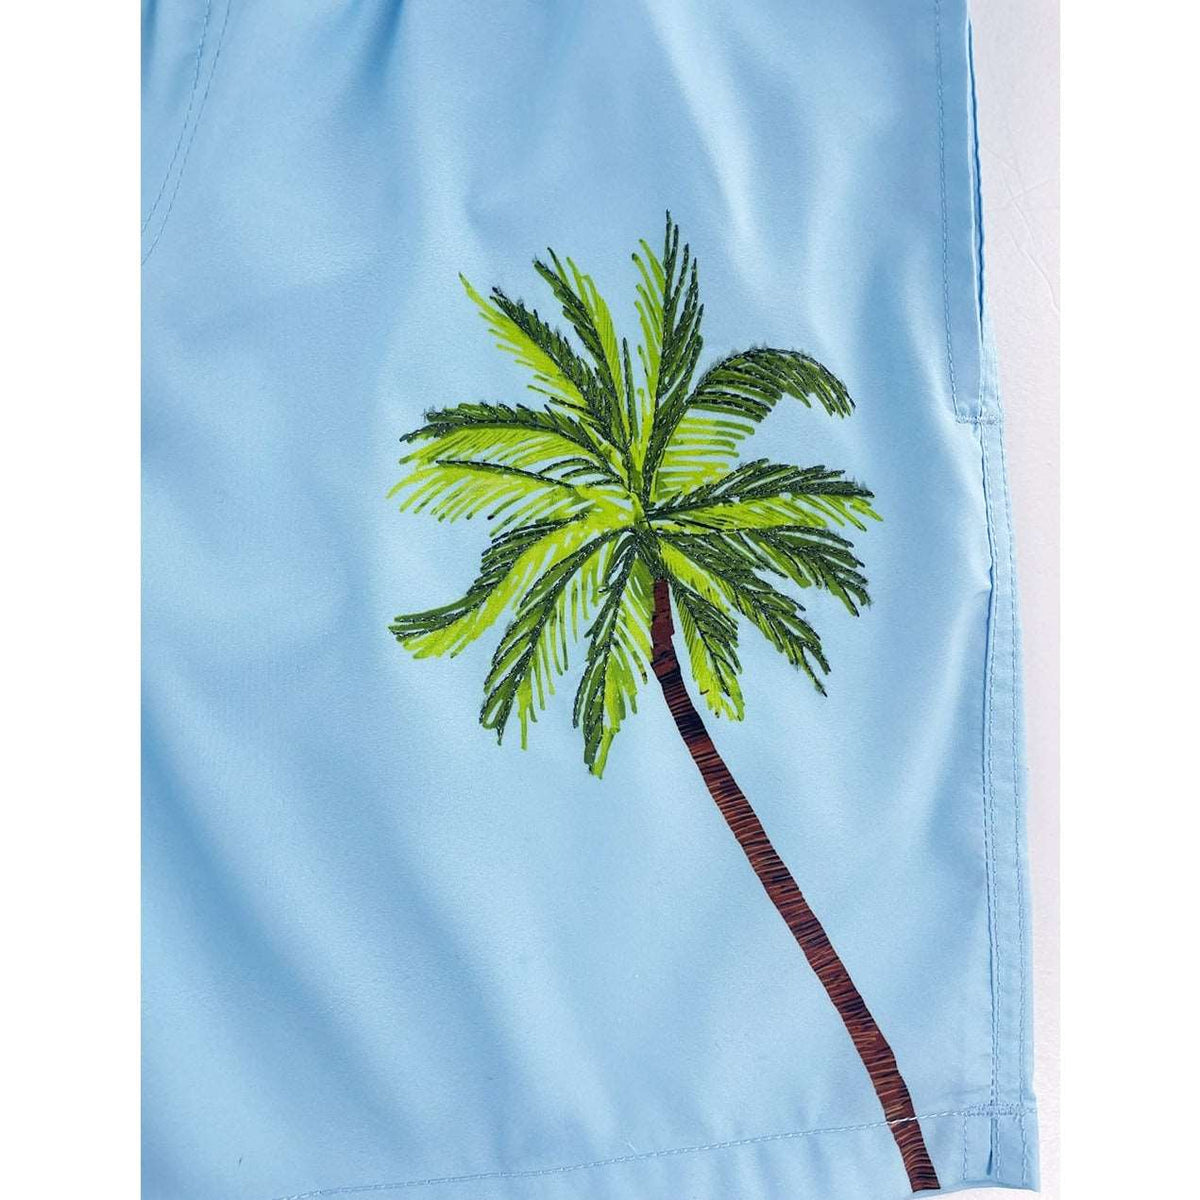 Men's 6'' Inseam embroidered swim trunks-Palm Pastel Islandhaze